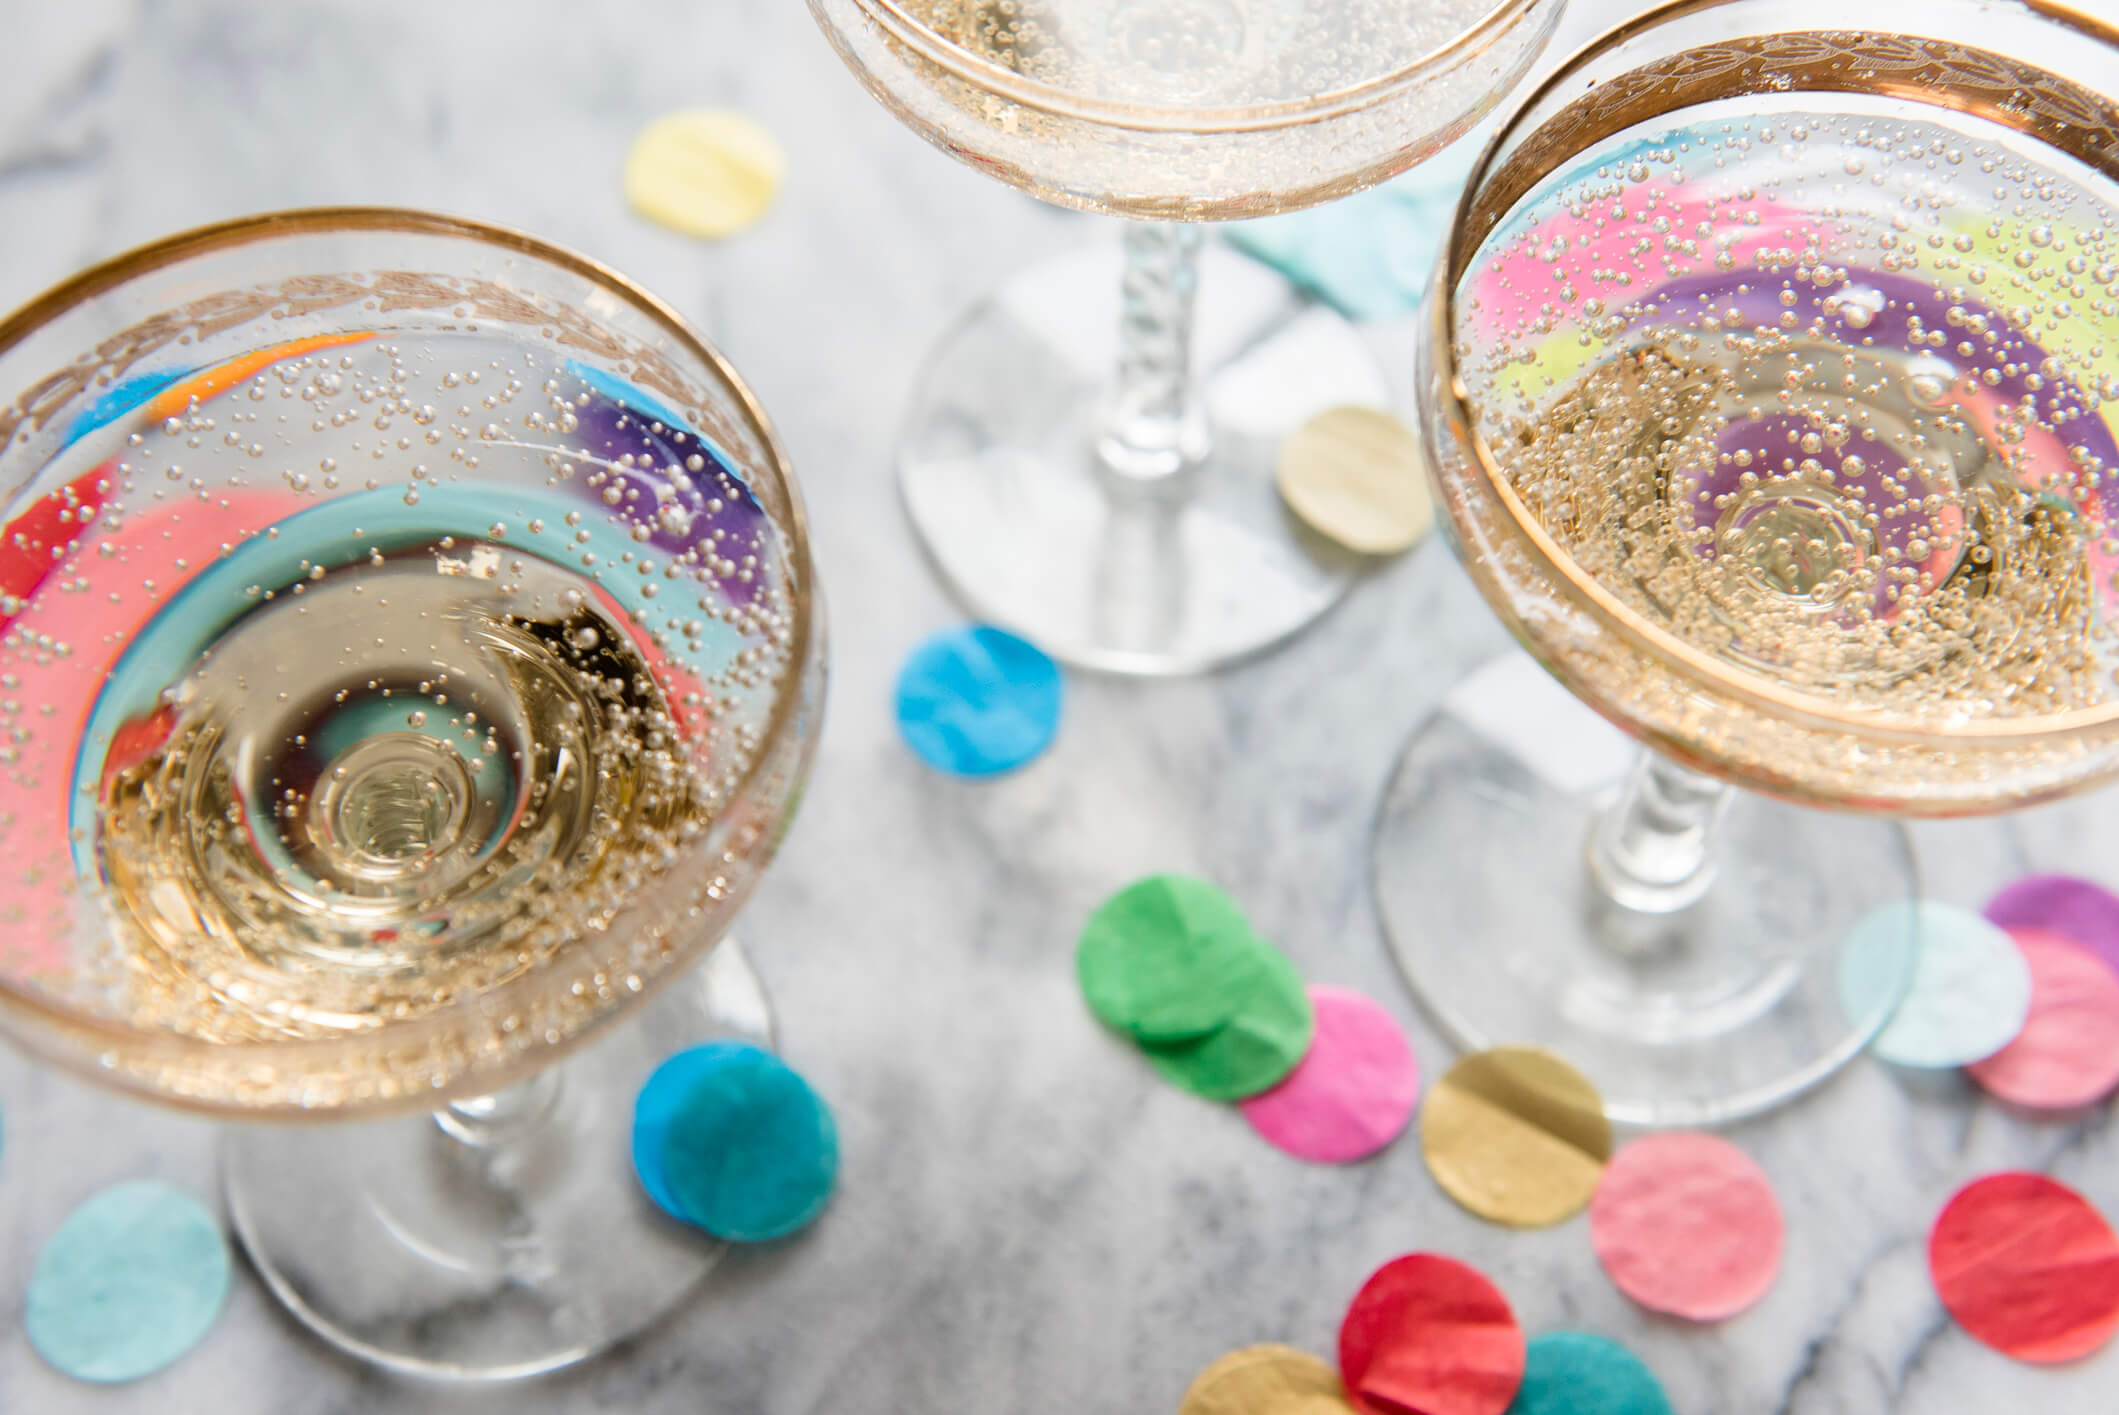 Confetti near glasses of champagne